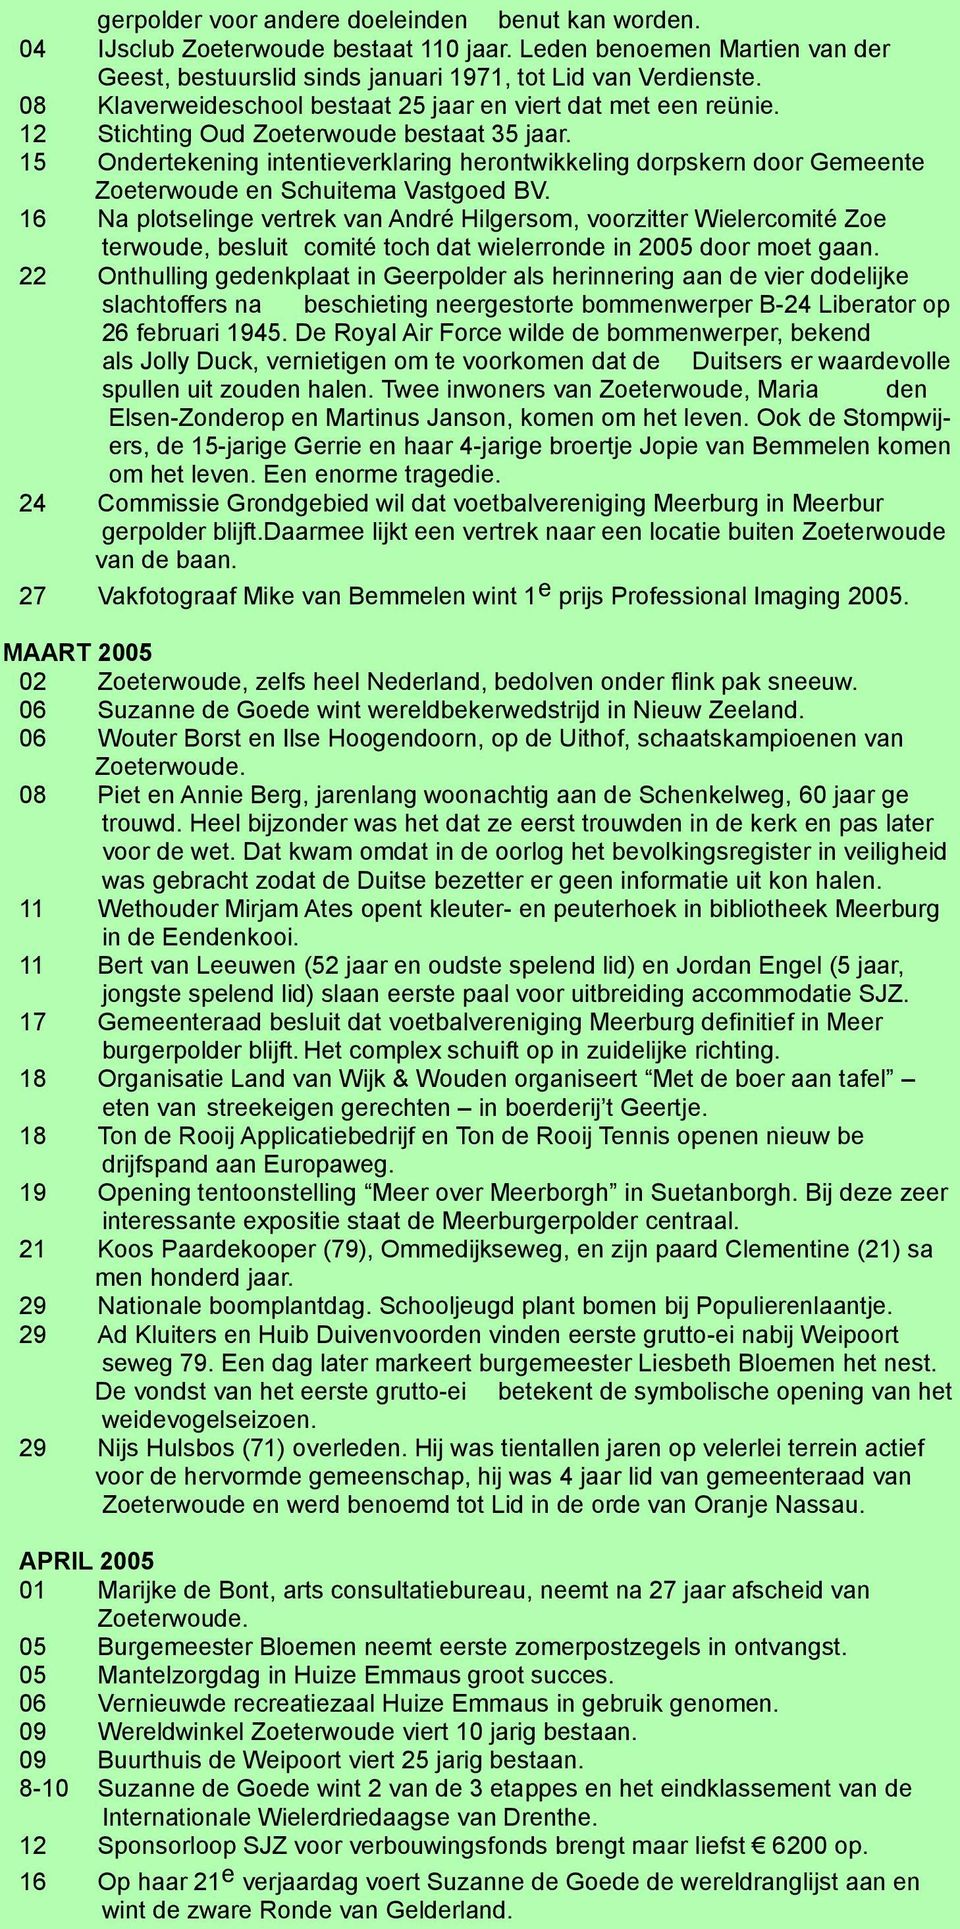 15 Ondertekening intentieverklaring herontwikkeling dorpskern door Gemeente Zoeterwoude en Schuitema Vastgoed BV.